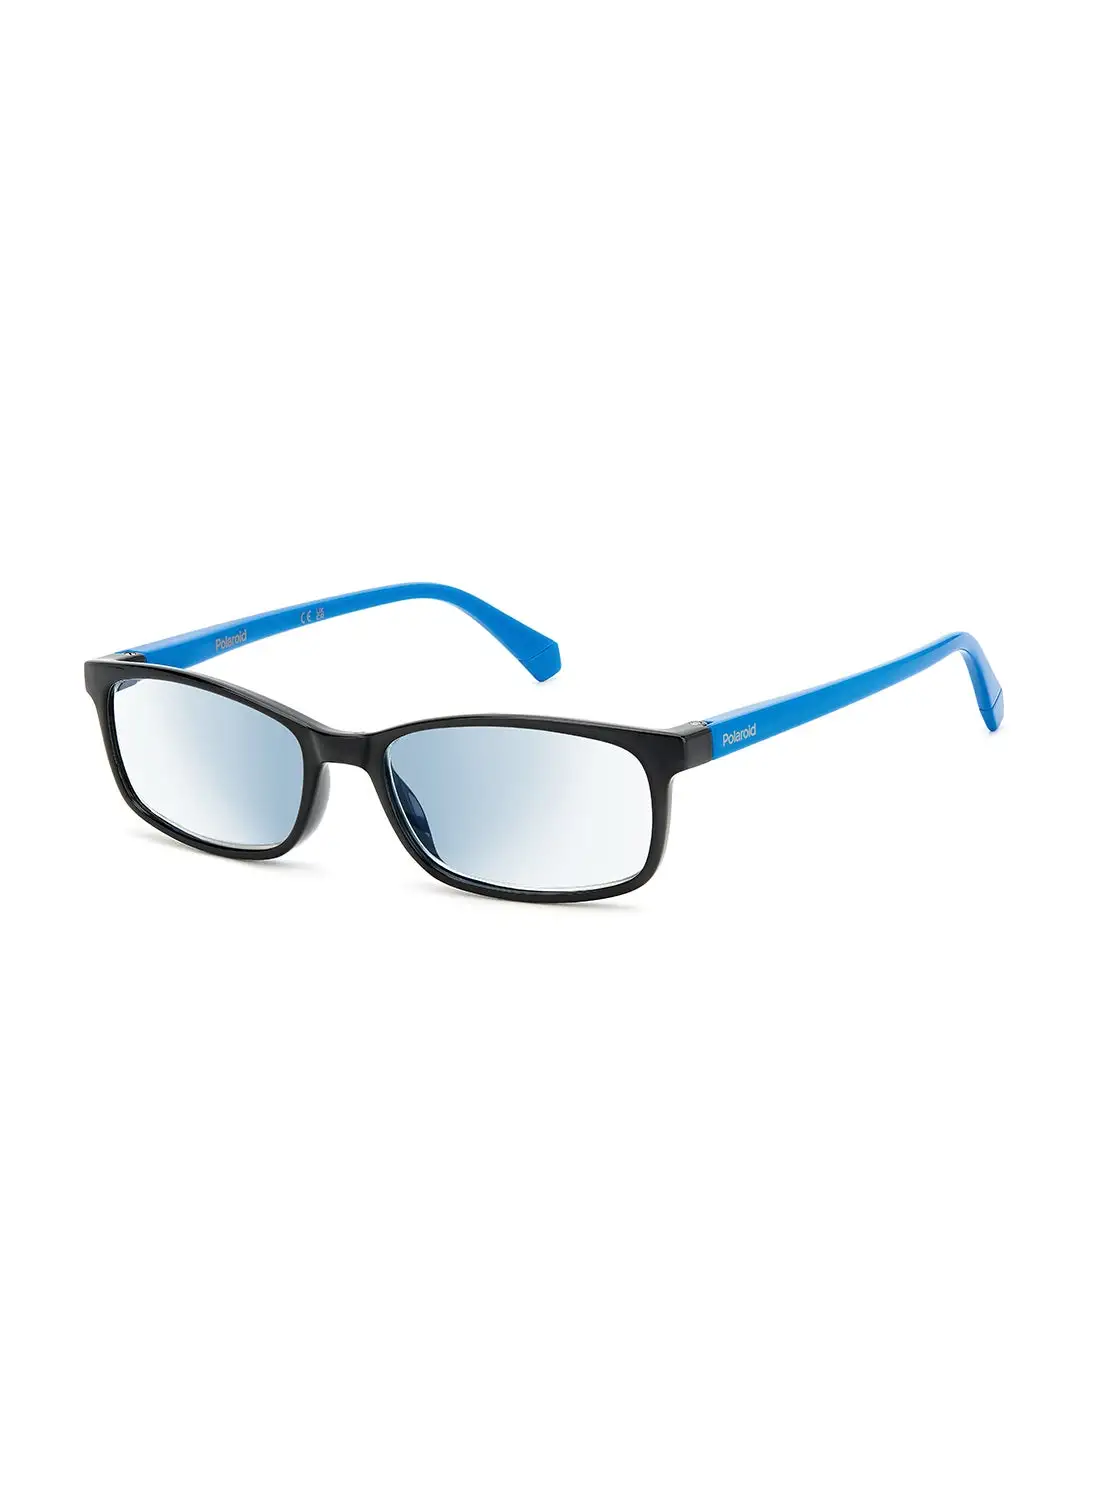 بولارويد نظارات قراءة للرجال - Pld 0035/R/Bb أسود 54 - مقاس العدسة: 54 ملم